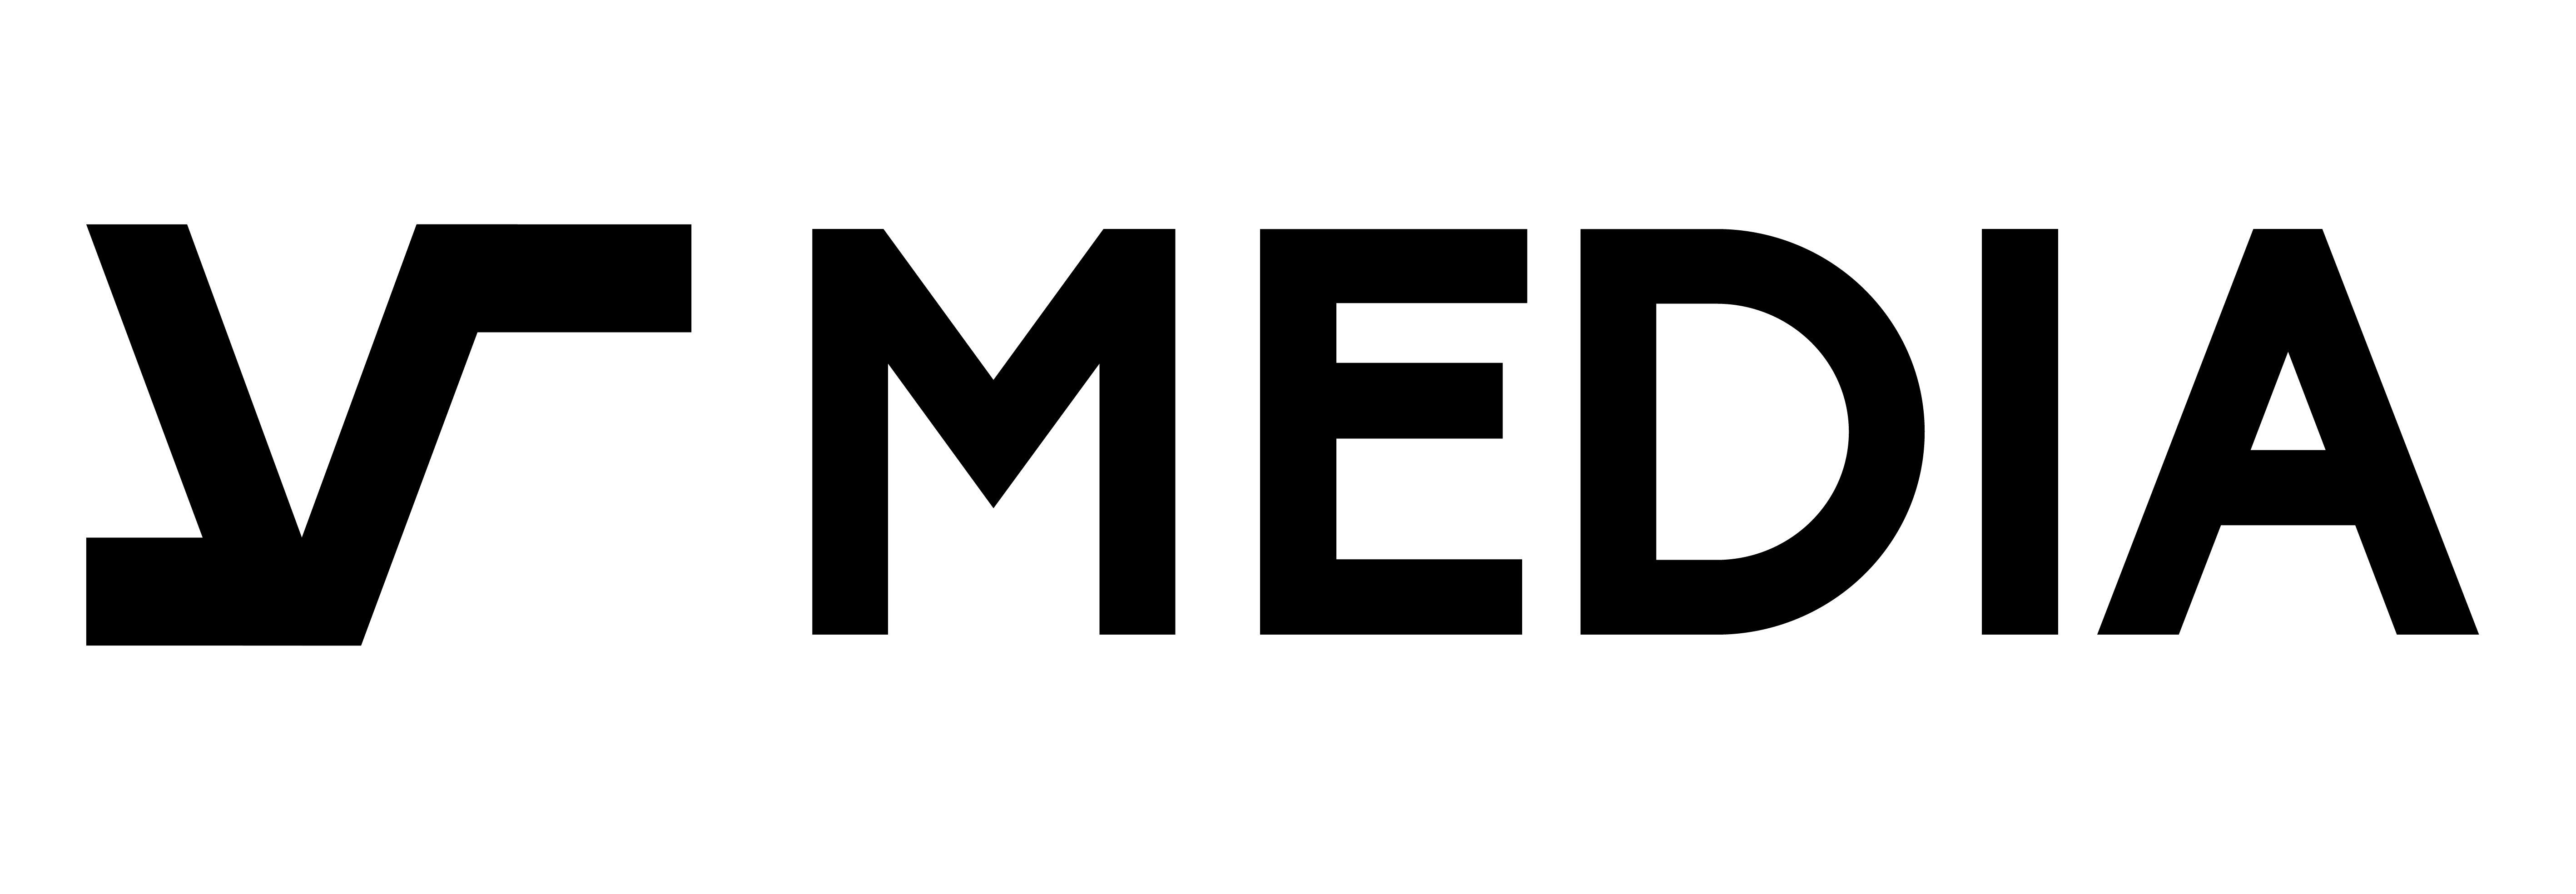 VS Media Group Logo